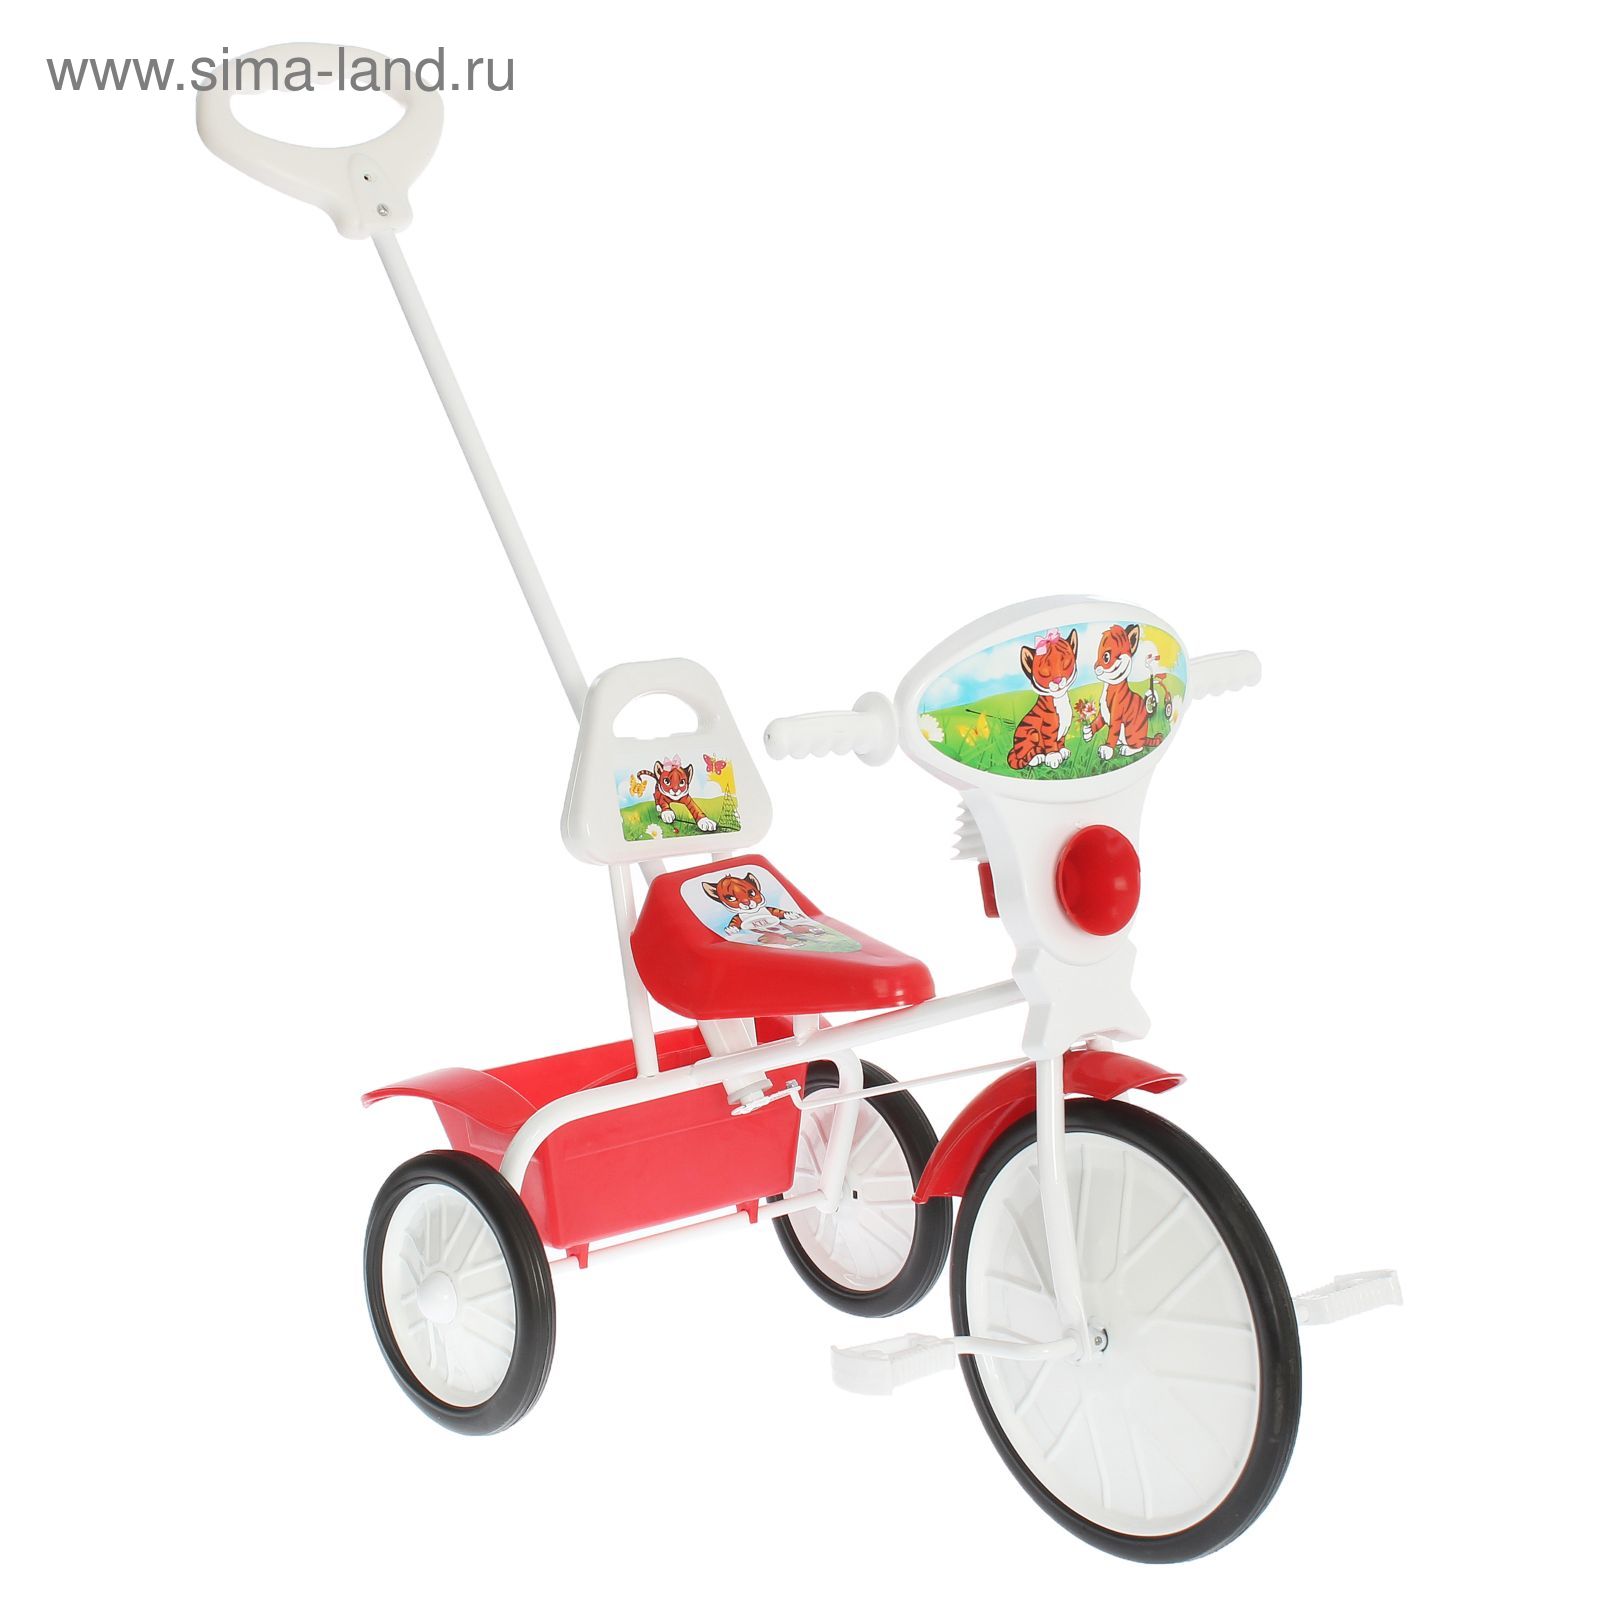 Велосипед трехколесный  "Малыш"  09/3, цвет красный, фасовка: 2шт.